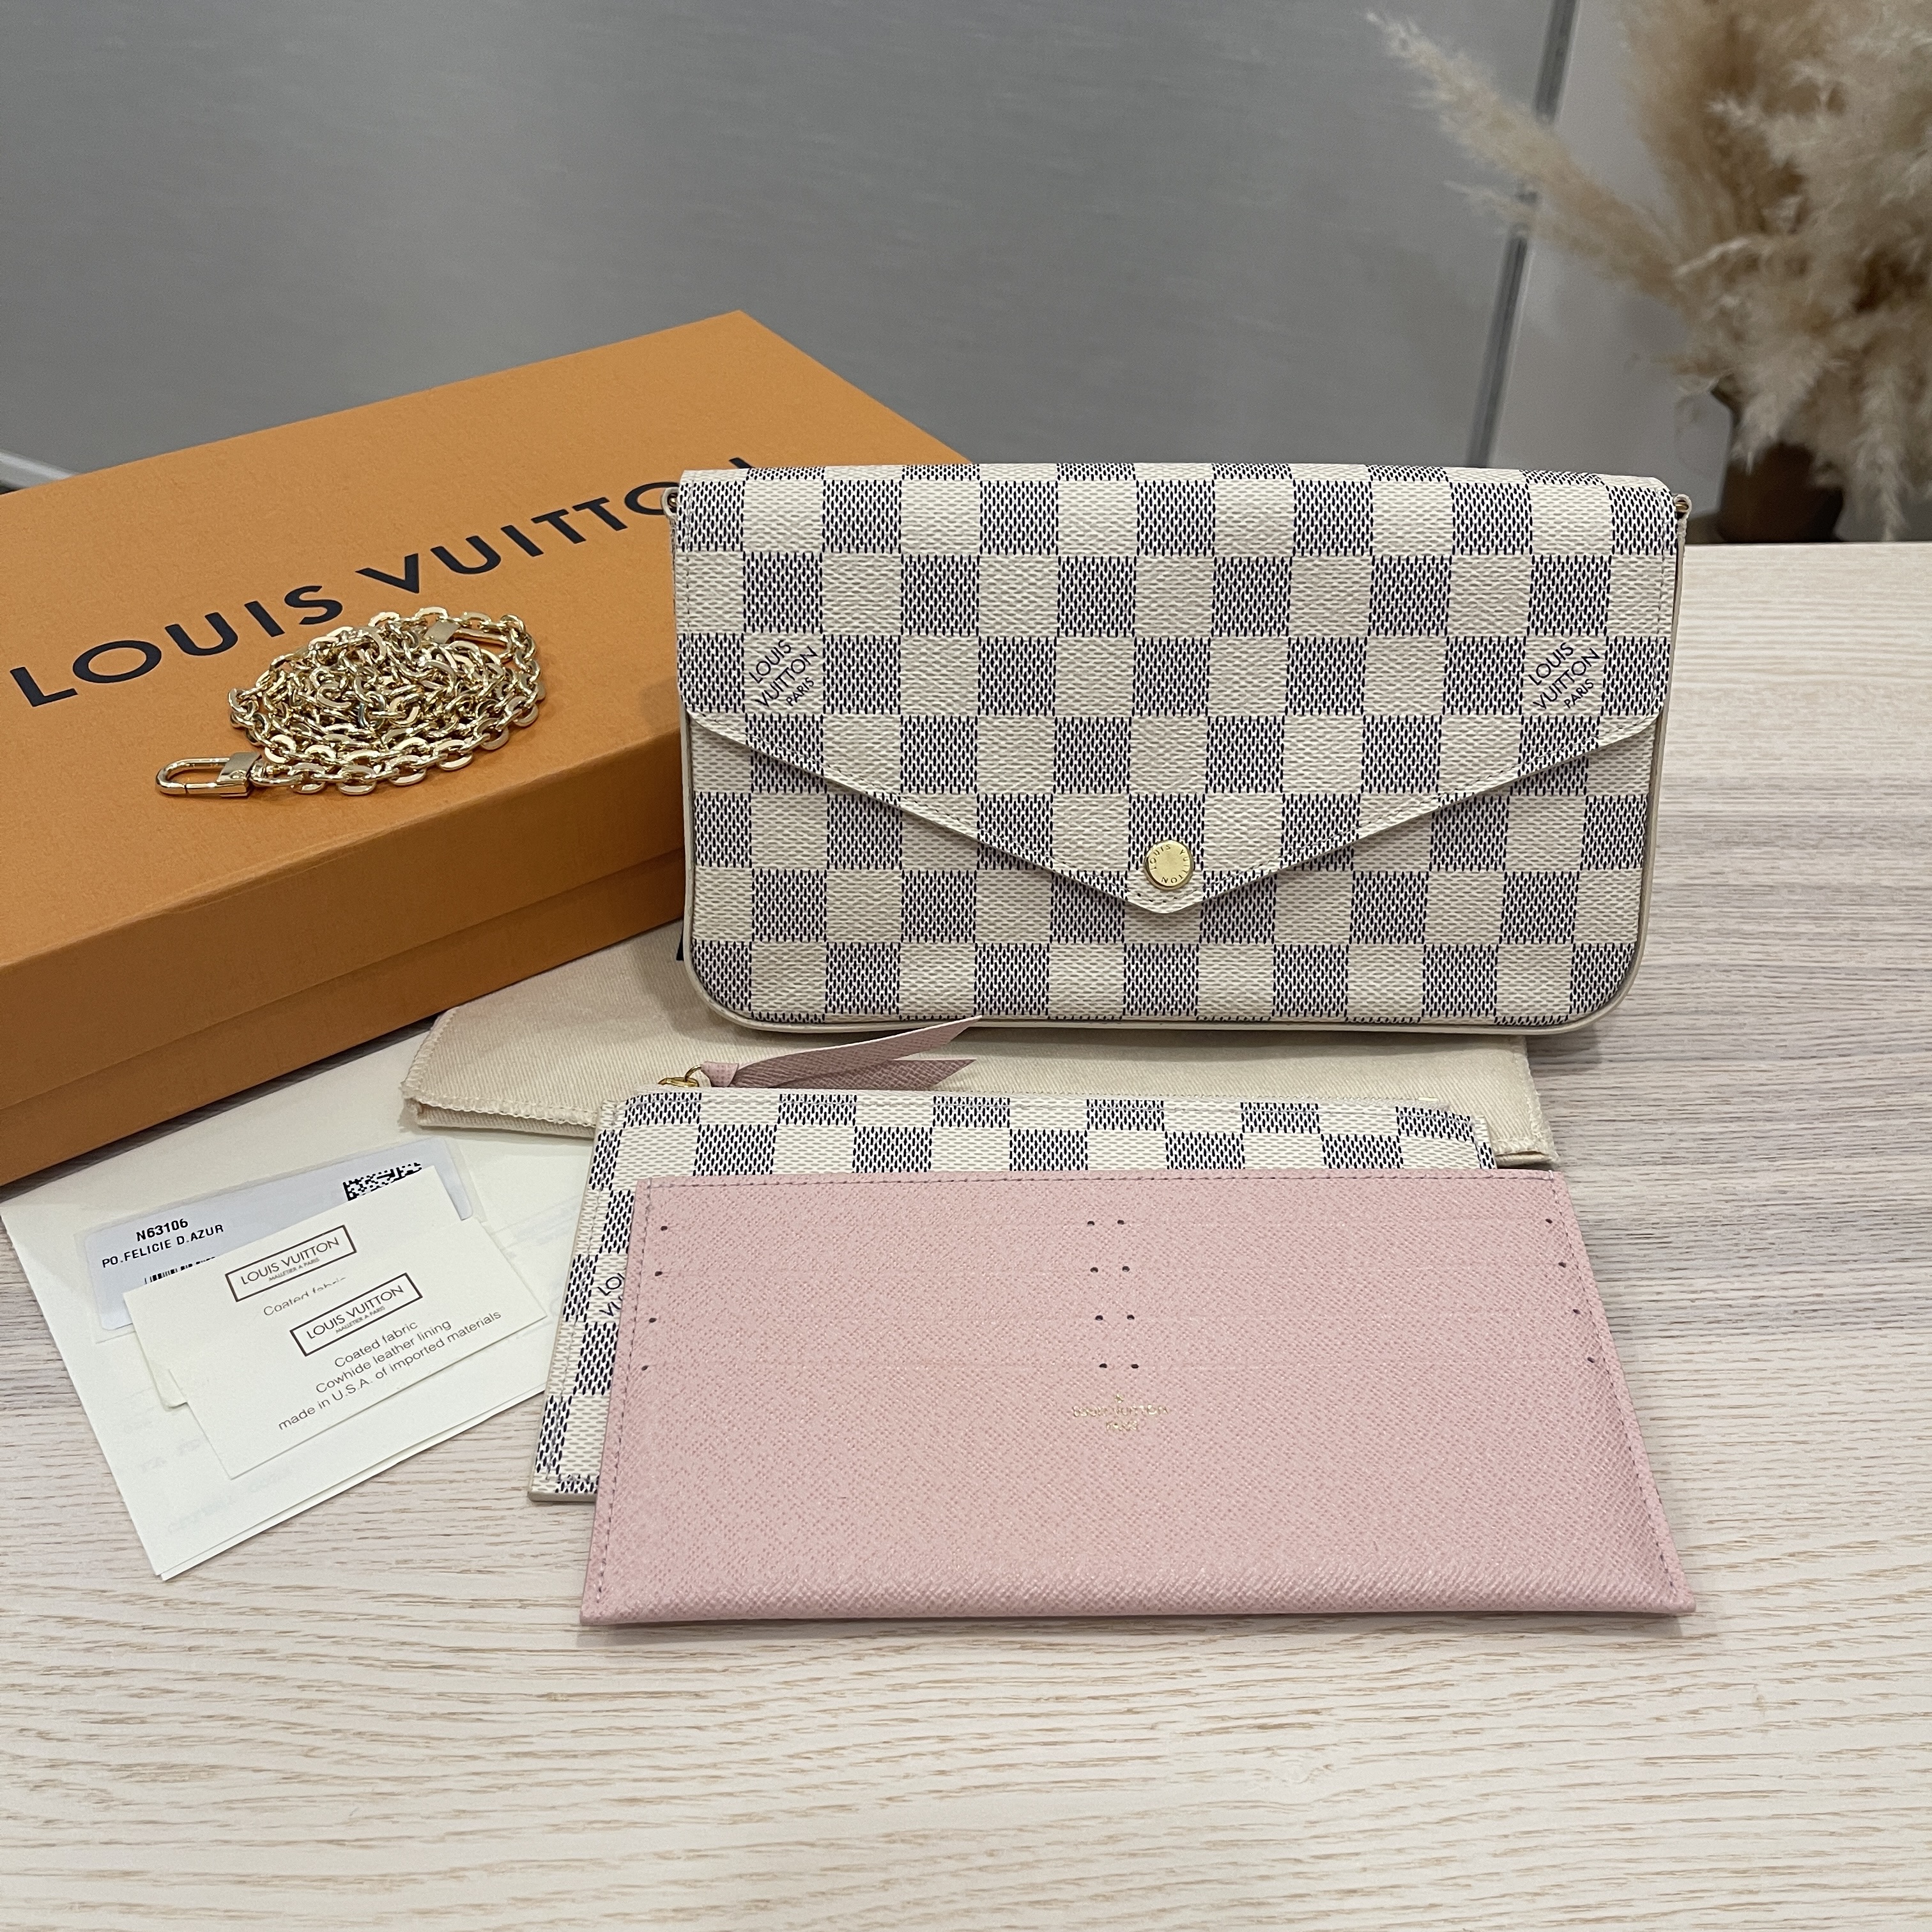 Louis Vuitton Felicie Damier Azur Rose Ballerine Chain White